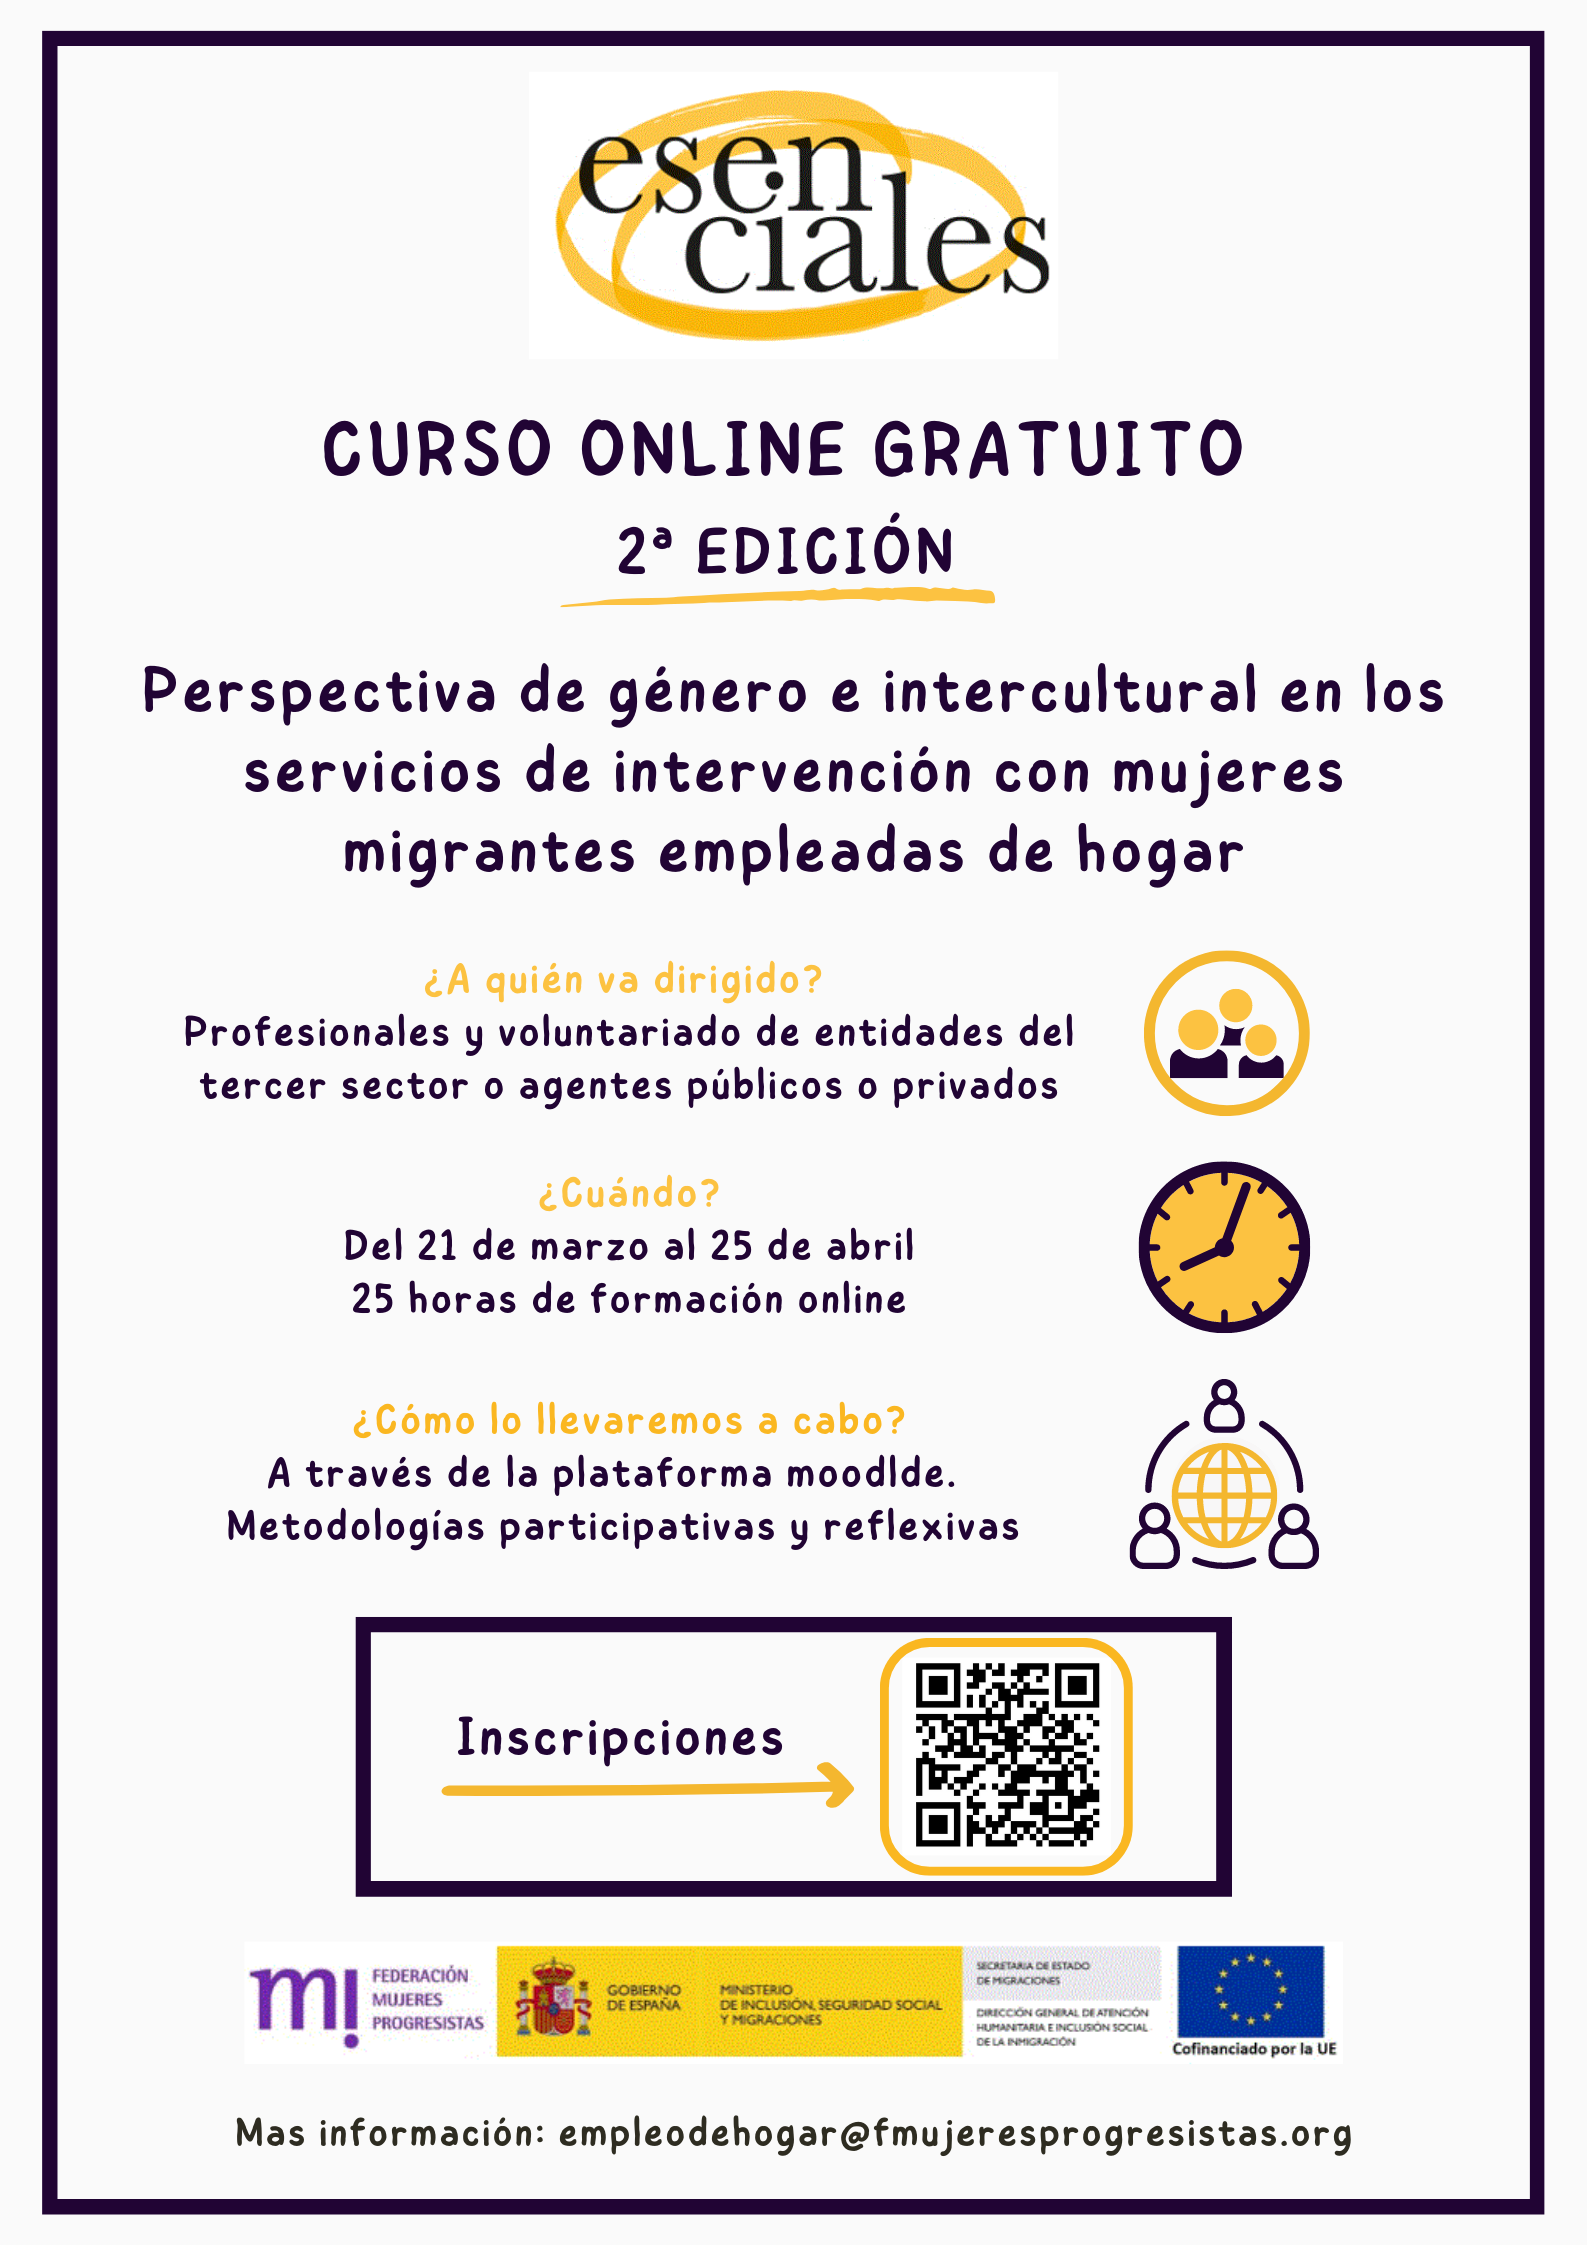 Course Image 2ª Edición: Perspectiva de género e intercultural en los servicios de intervención con mujeres migrantes empleadas de hogar